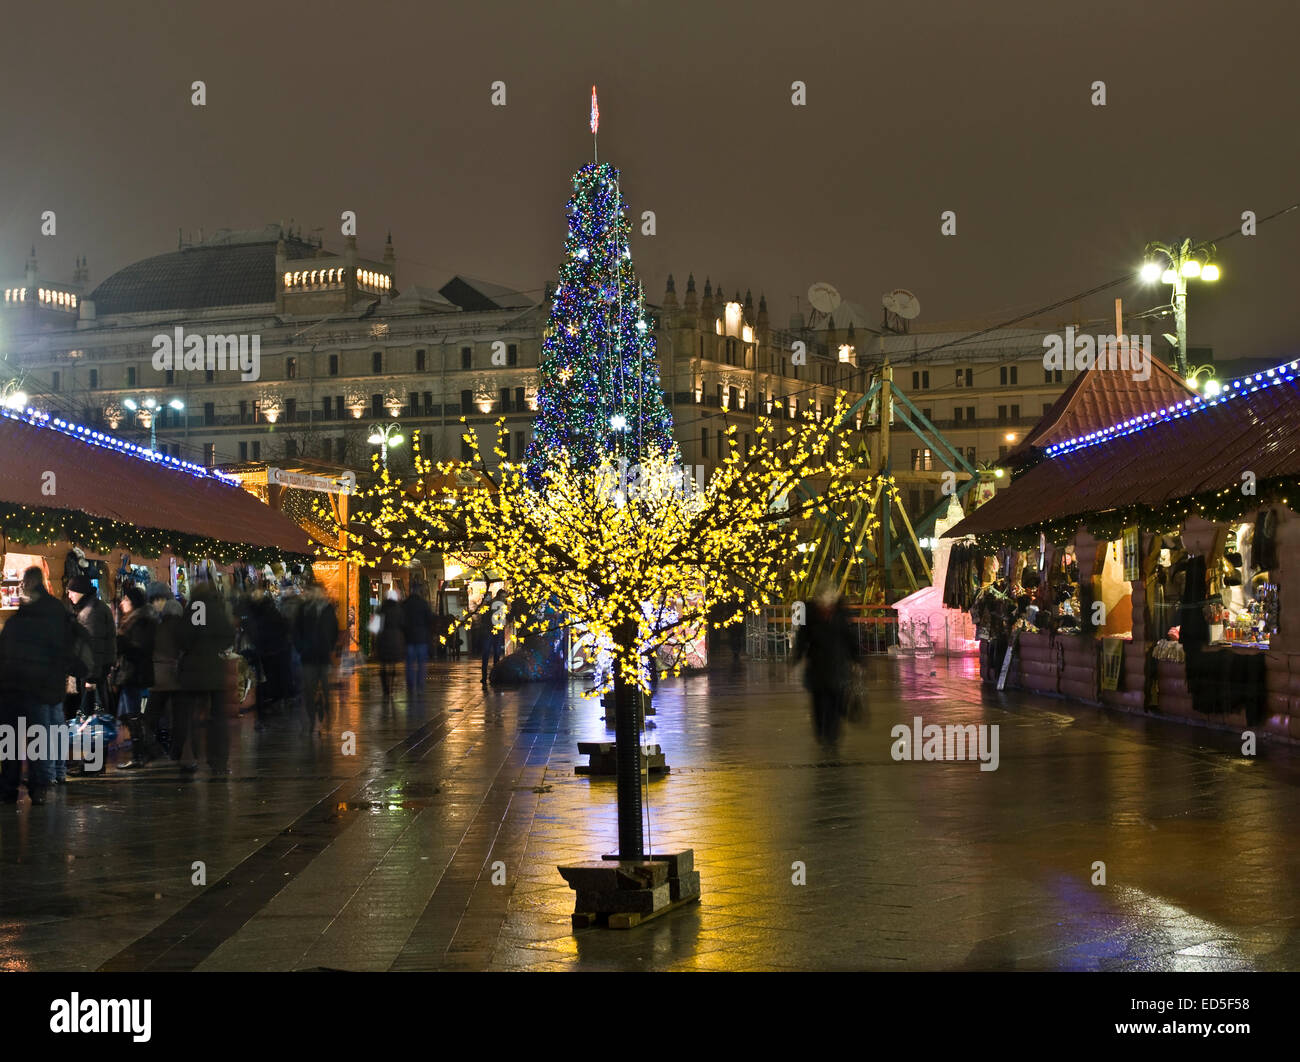 Moscú, Rusia - Diciembre 14, 2012: los árboles de Navidad en la plaza del teatro. Foto de stock